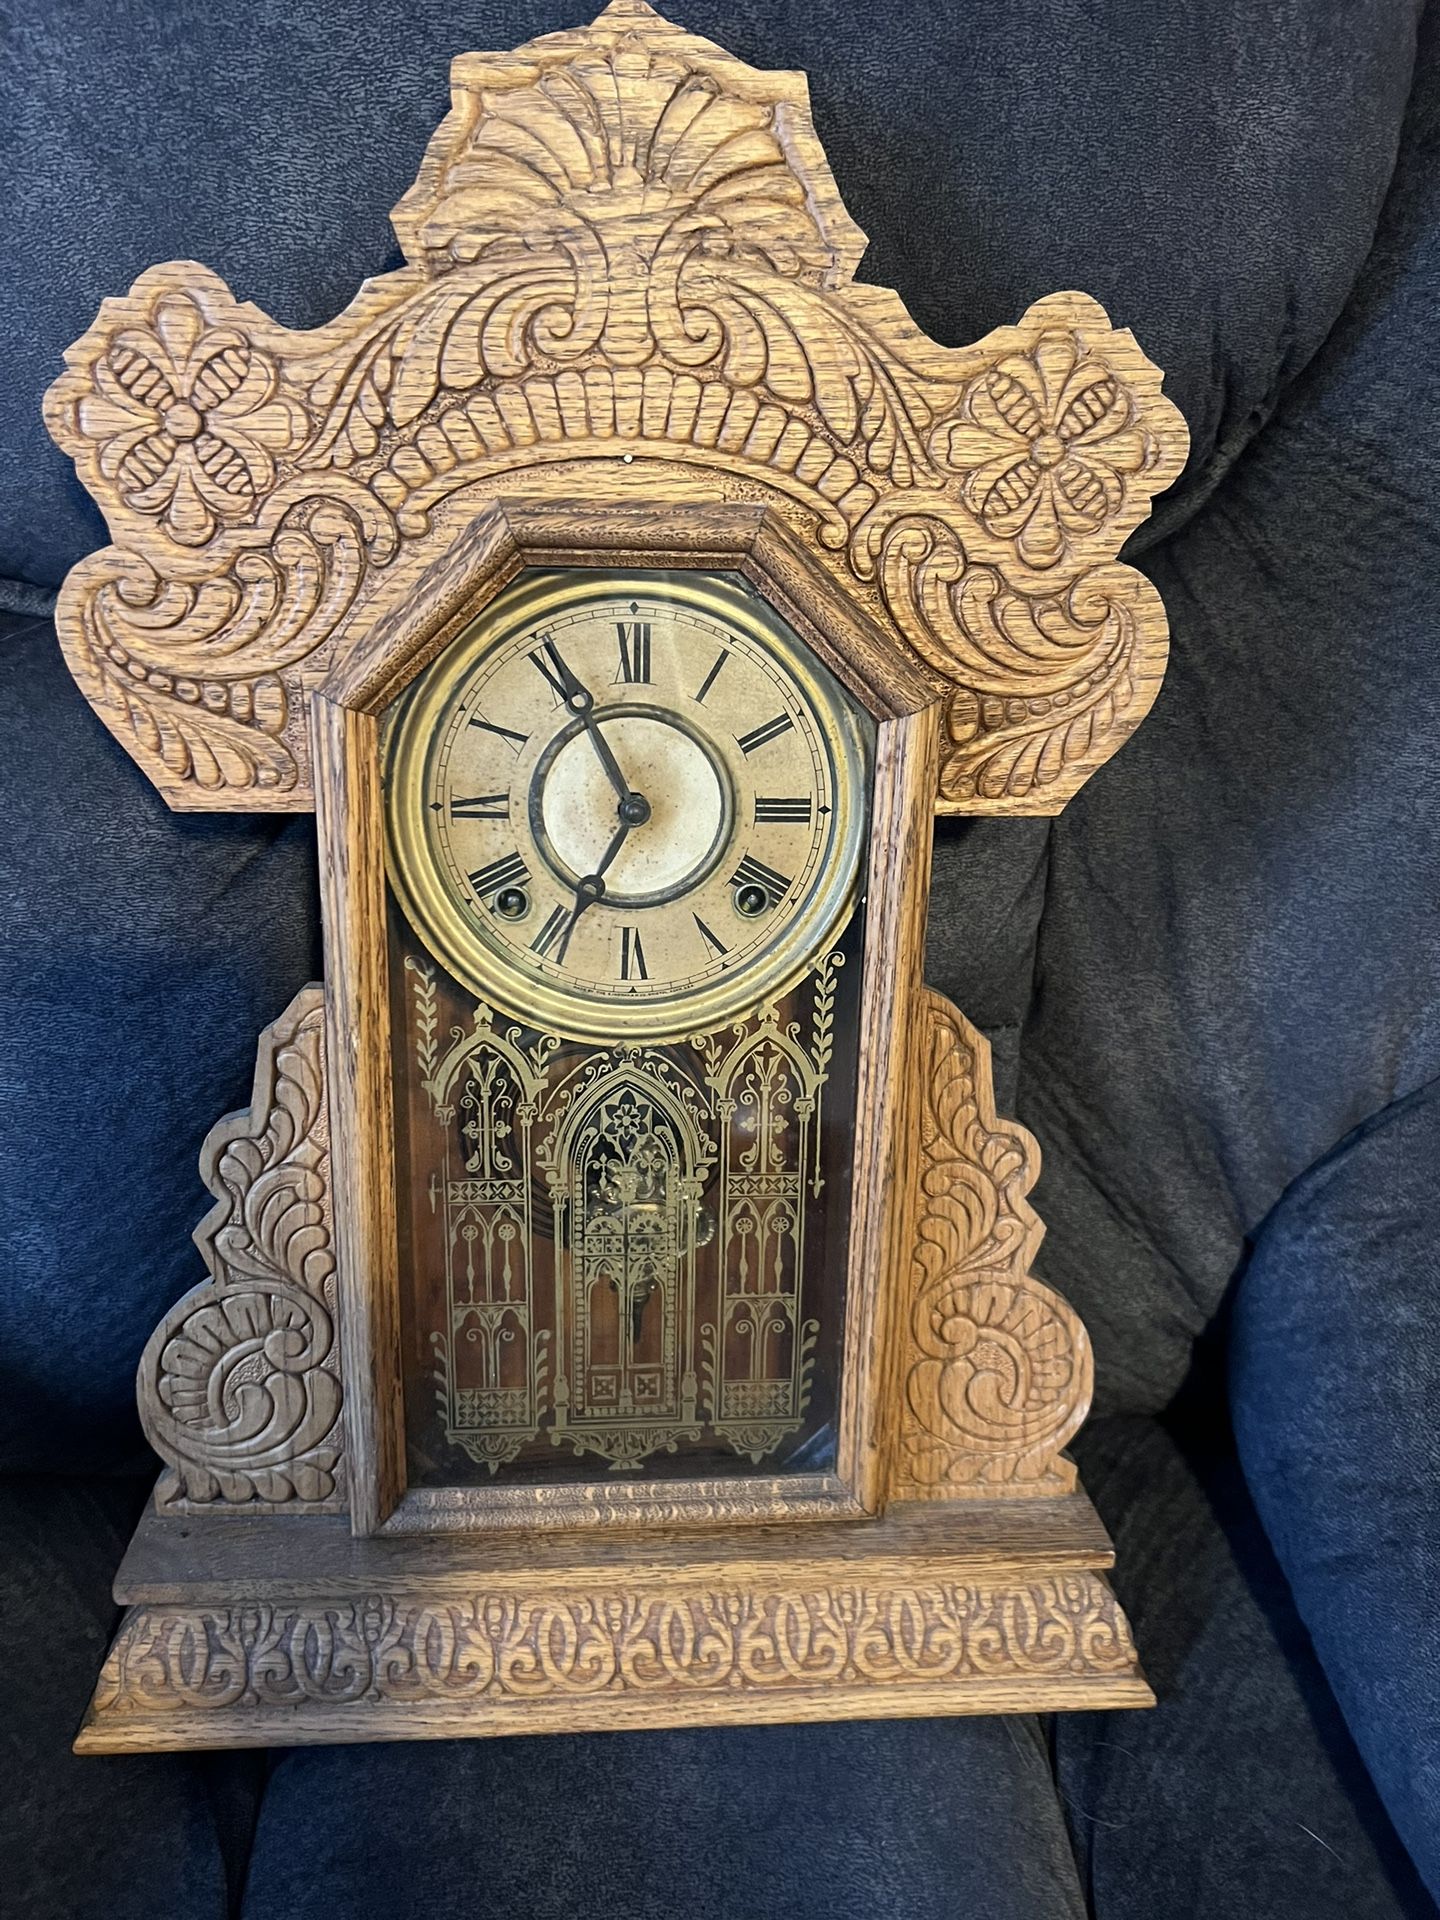 Antique kitchen clock